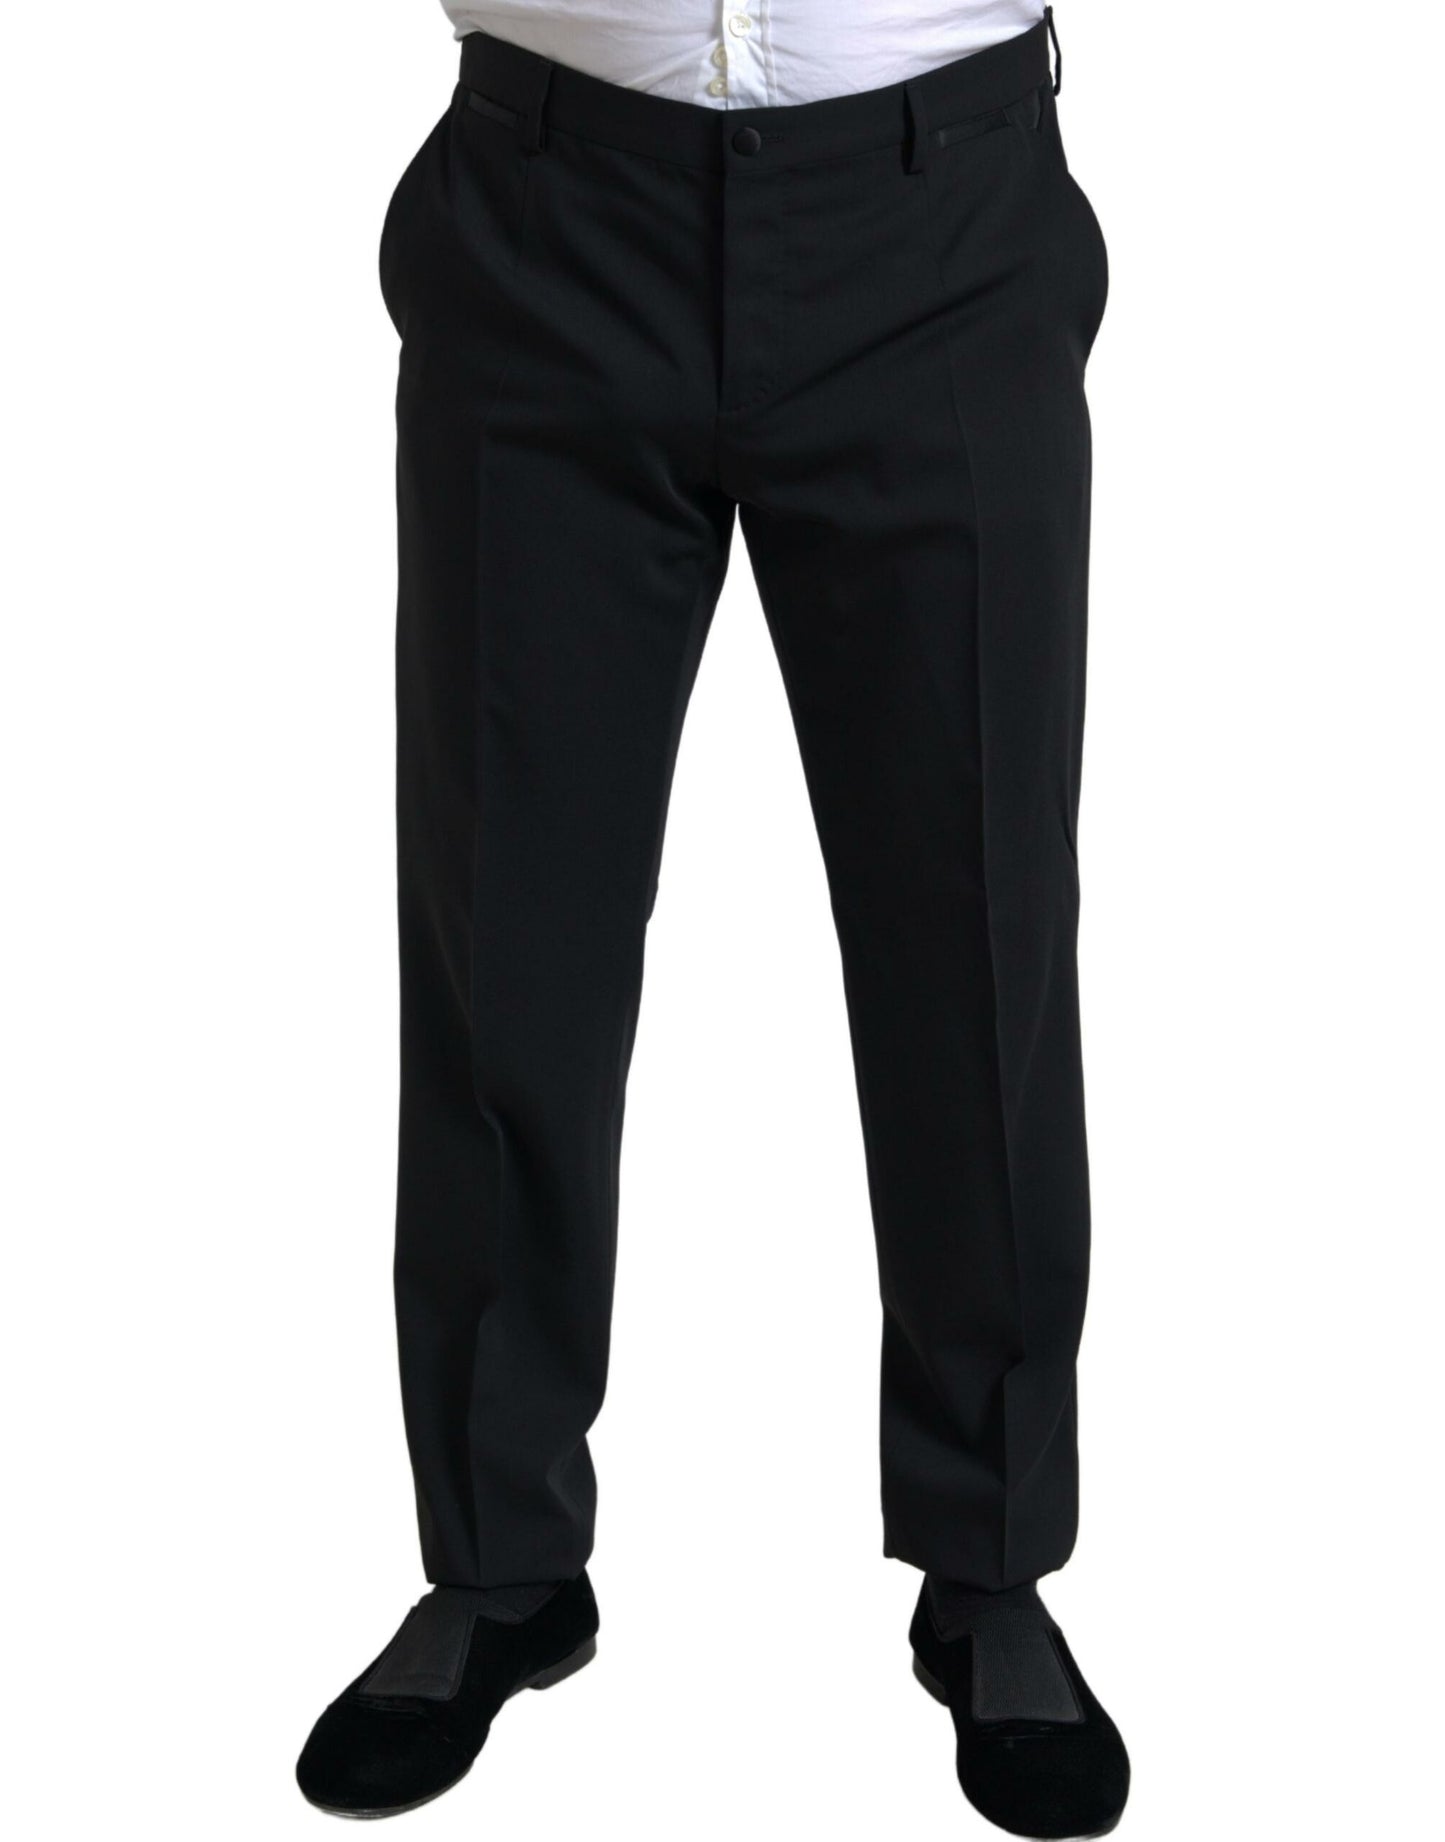 Elegant Black Slim Fit Two-Piece Suit